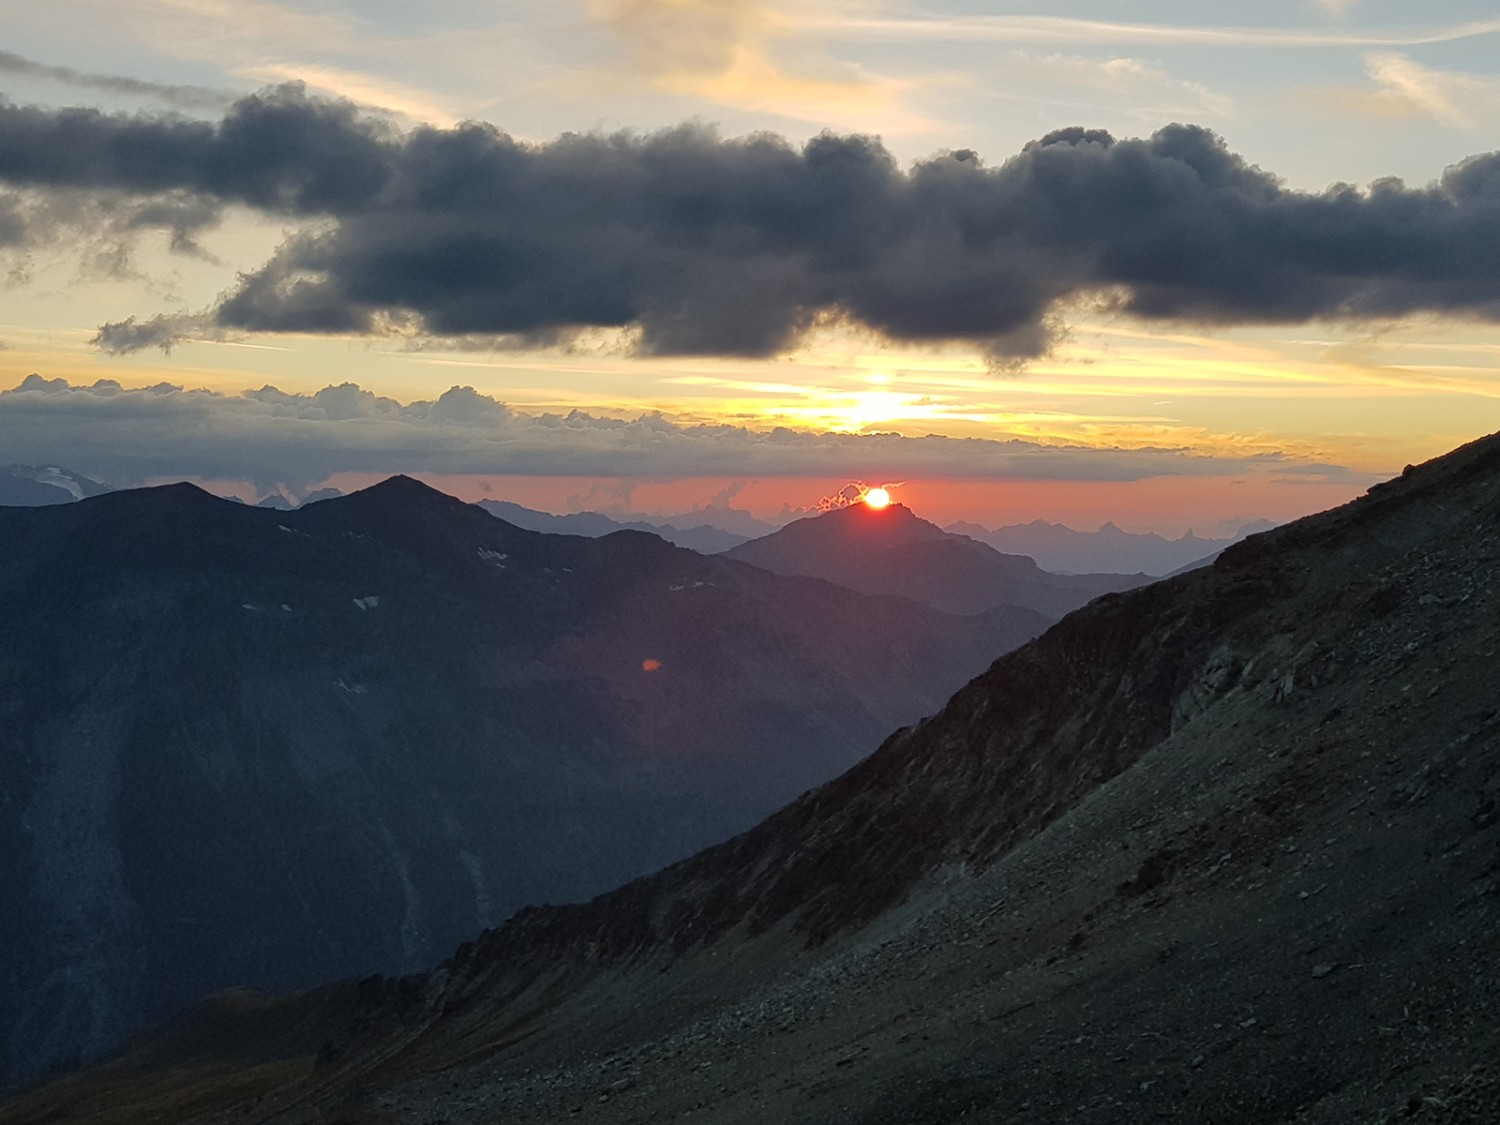 Depuis la cabane de Tracuit, à plus de 3200 mètres, les couchers de soleil semblent encore plus saisissants.